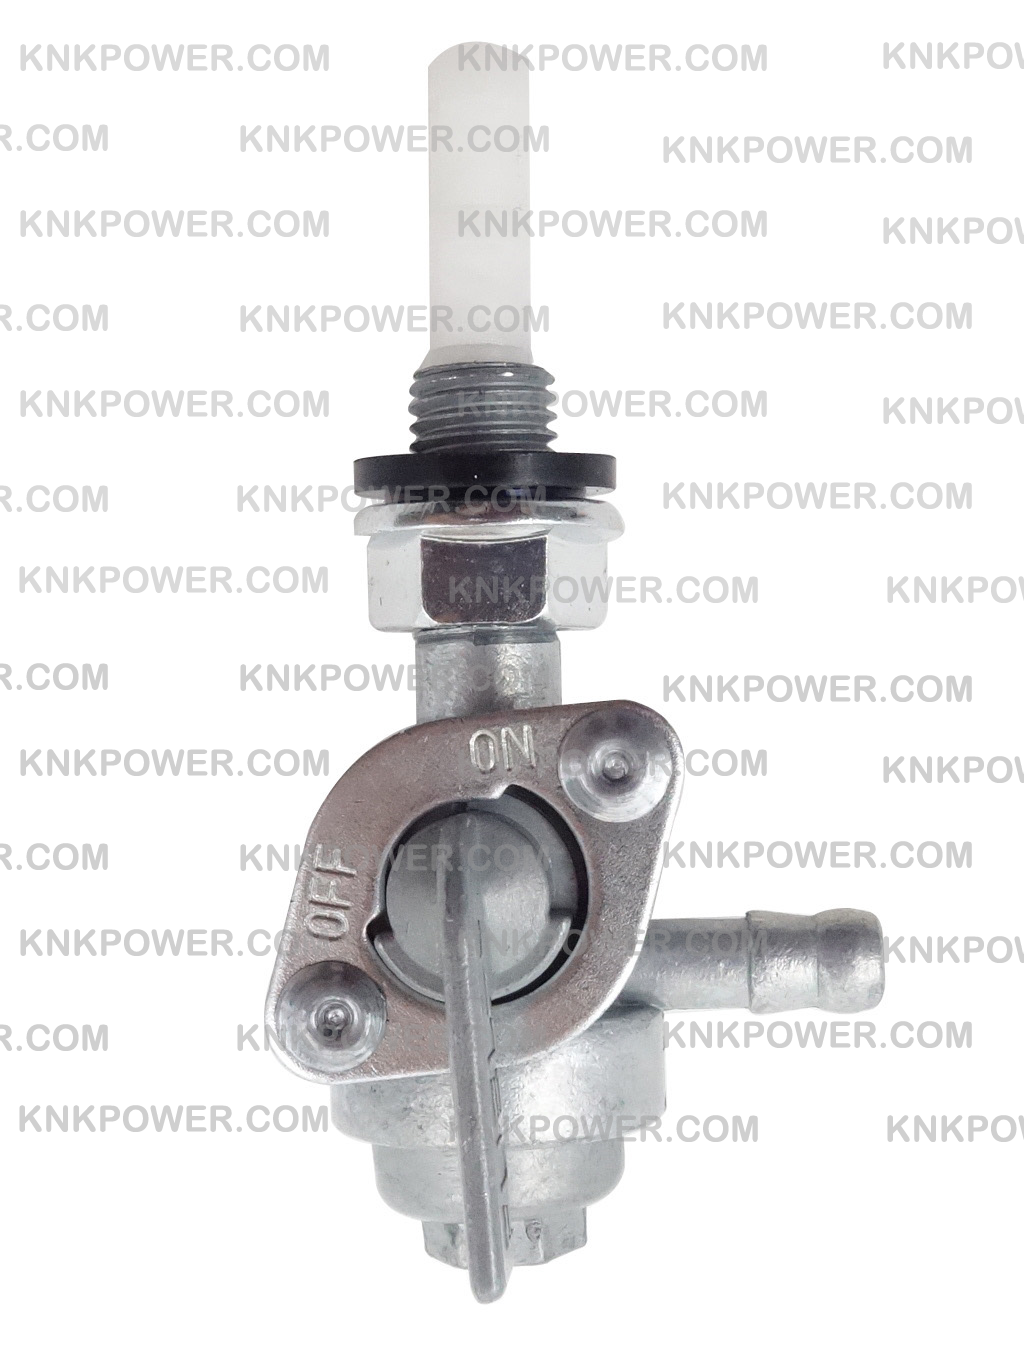 knkpower [10146] FIT FOR: 2500W 3500W 4500W 5500W 6500W GENERATOR